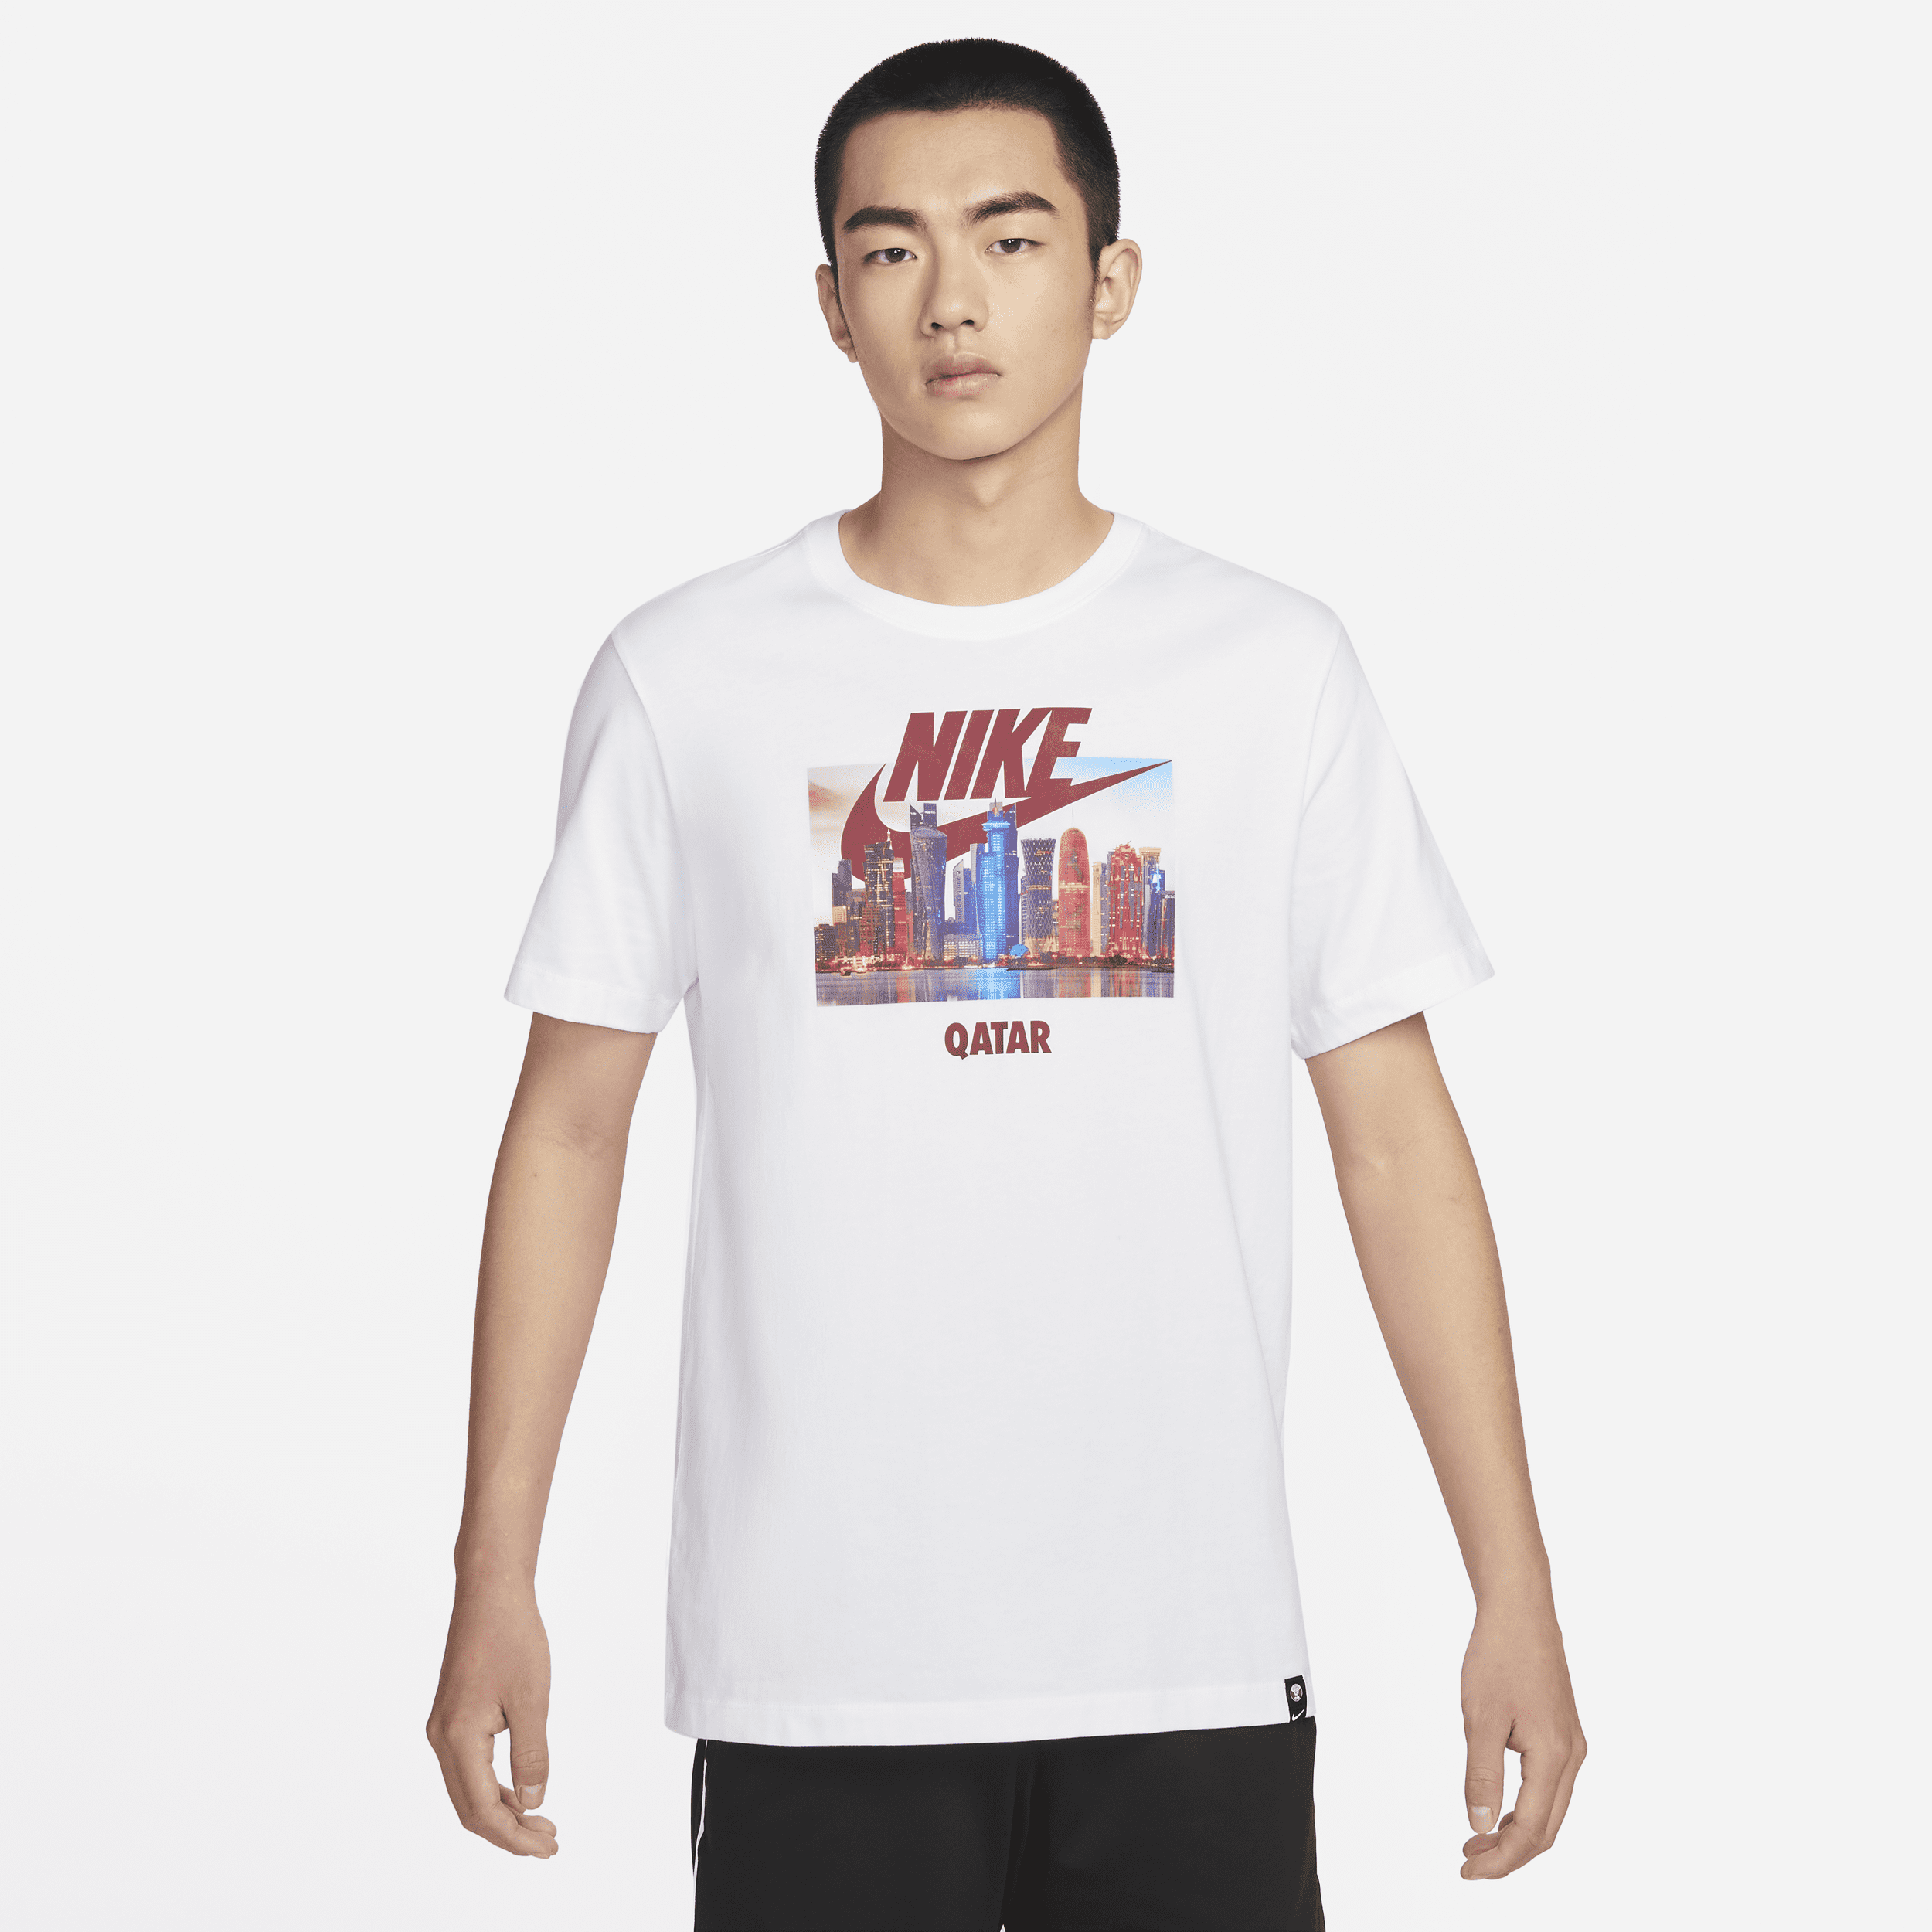 Nike Catar Camiseta con estampado - Hombre - Blanco